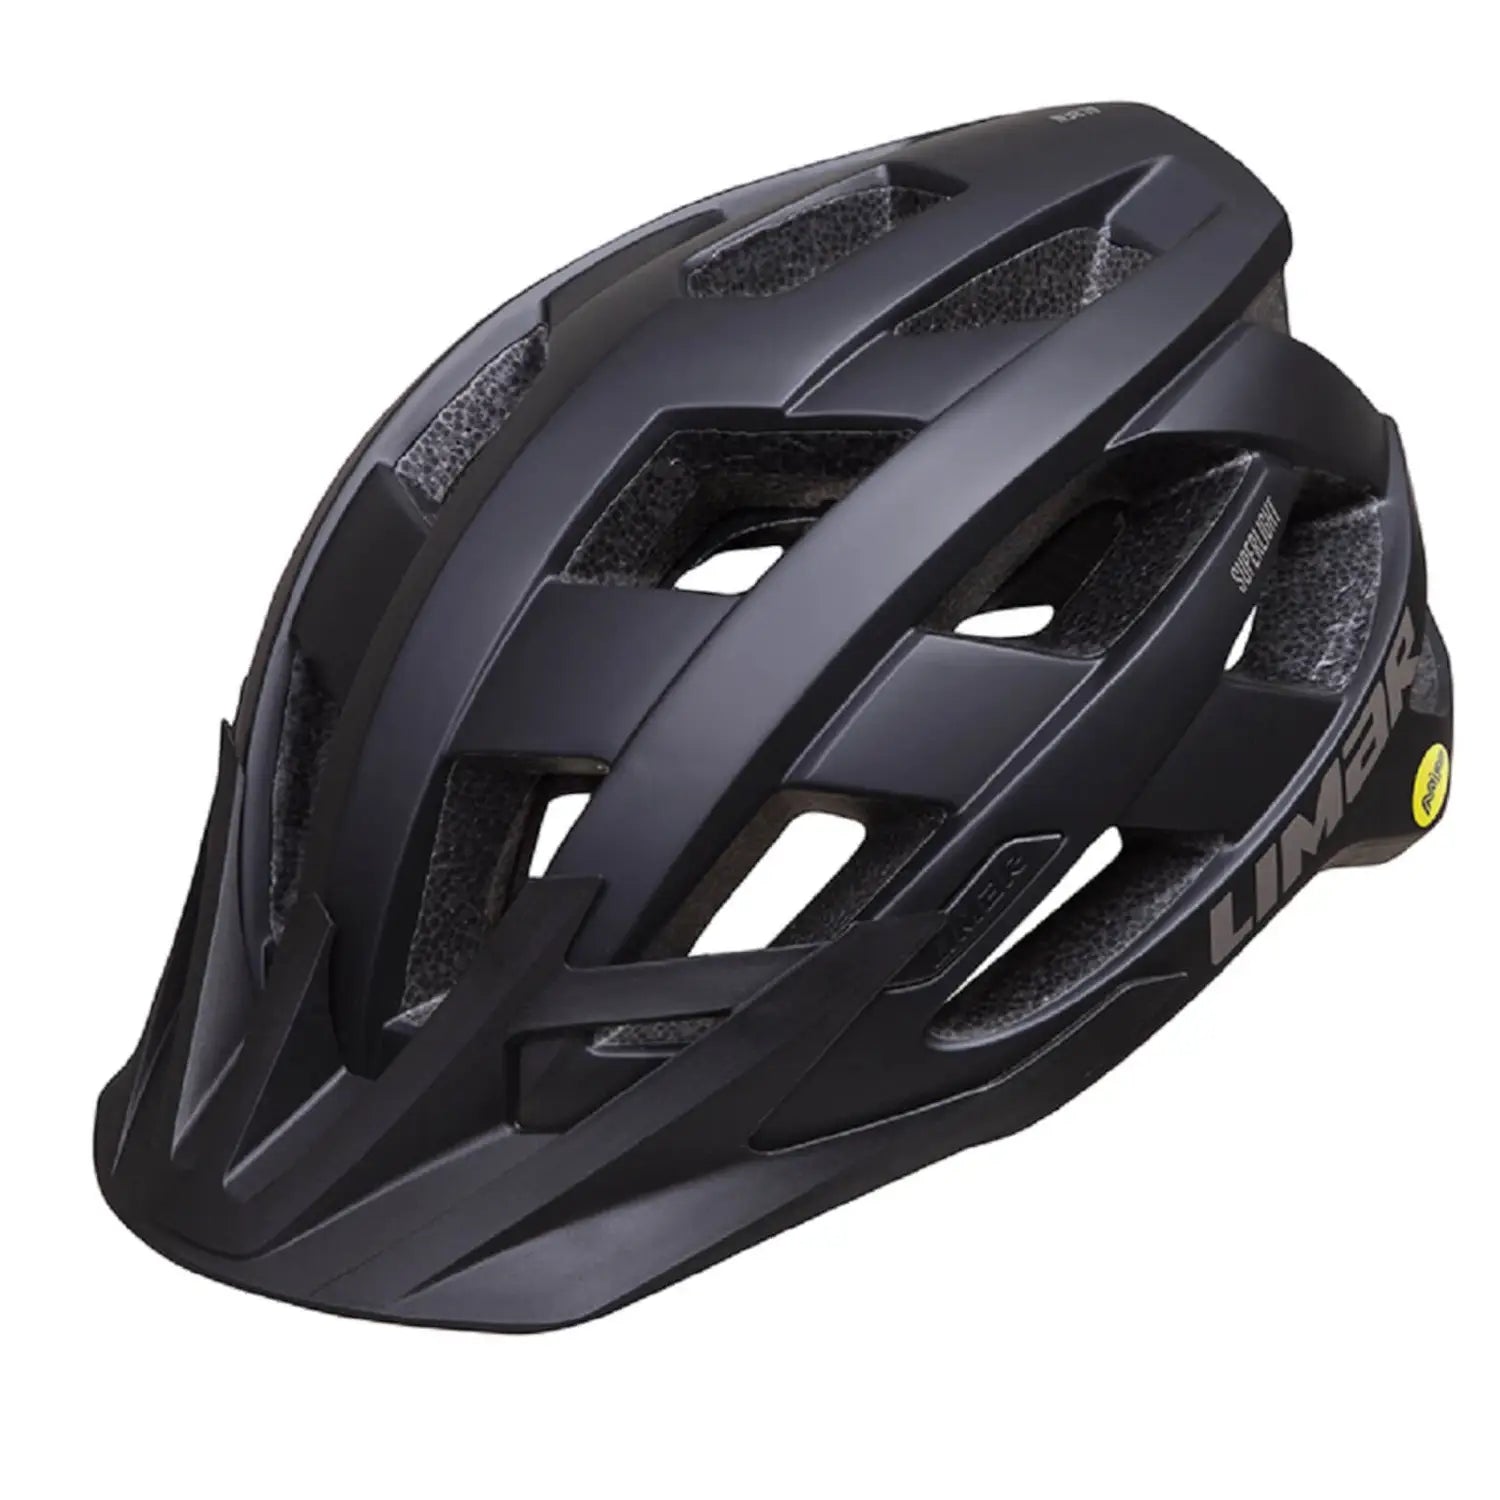 Limar Alben MIPS Mountain Bike Helmet